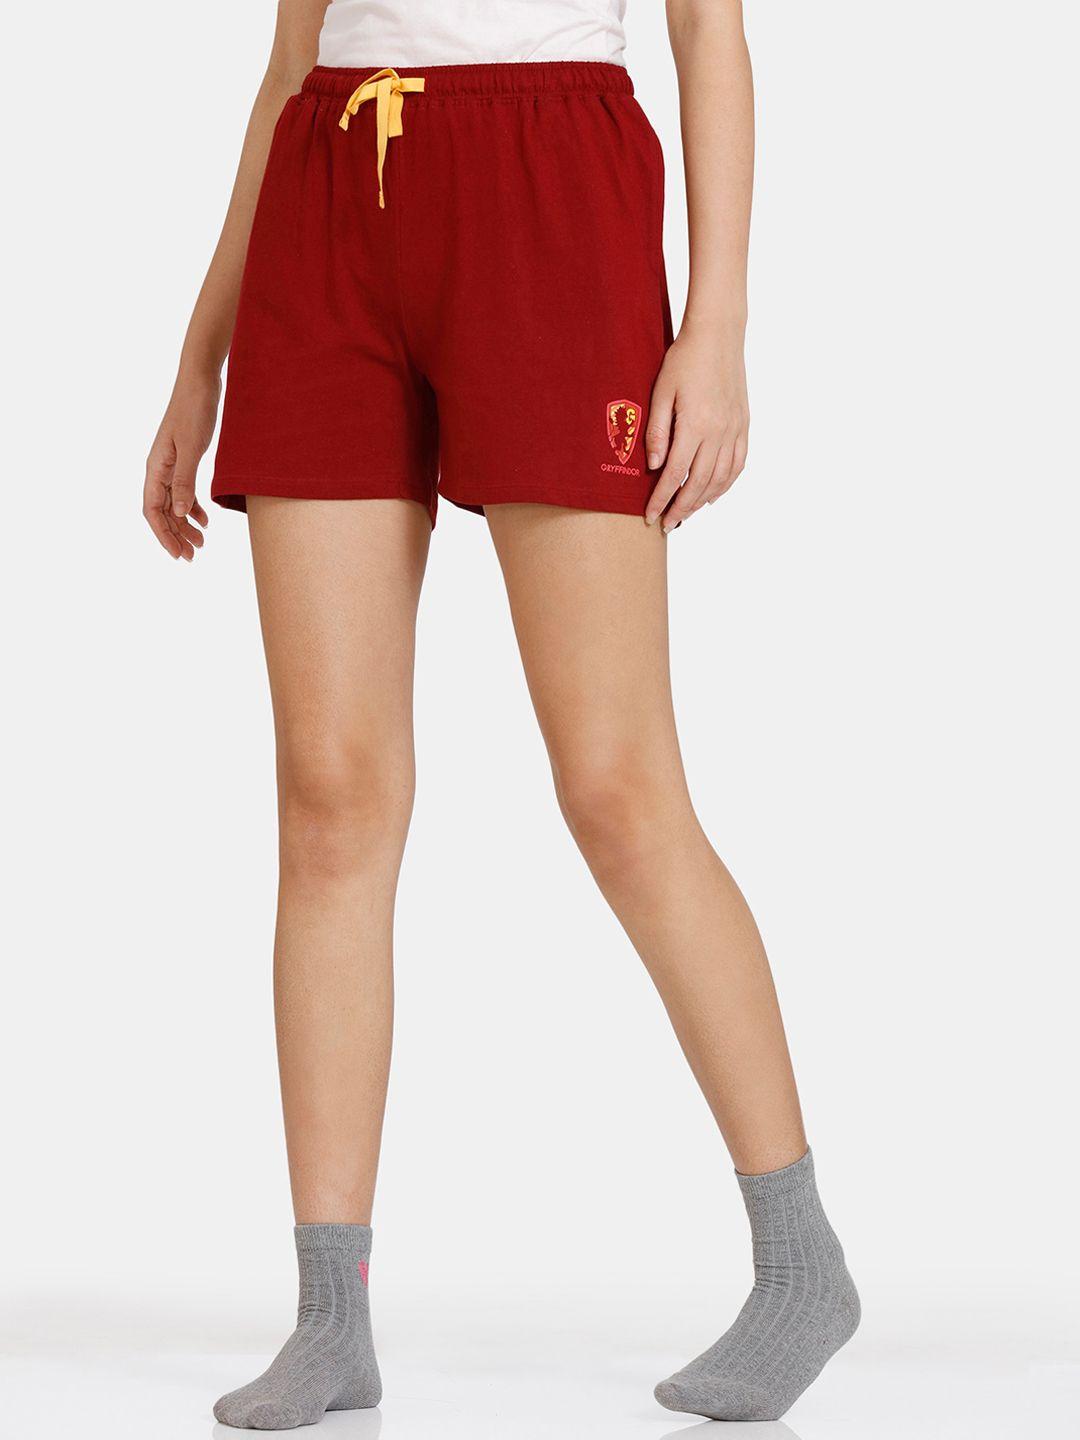 zivame-women-red-shorts